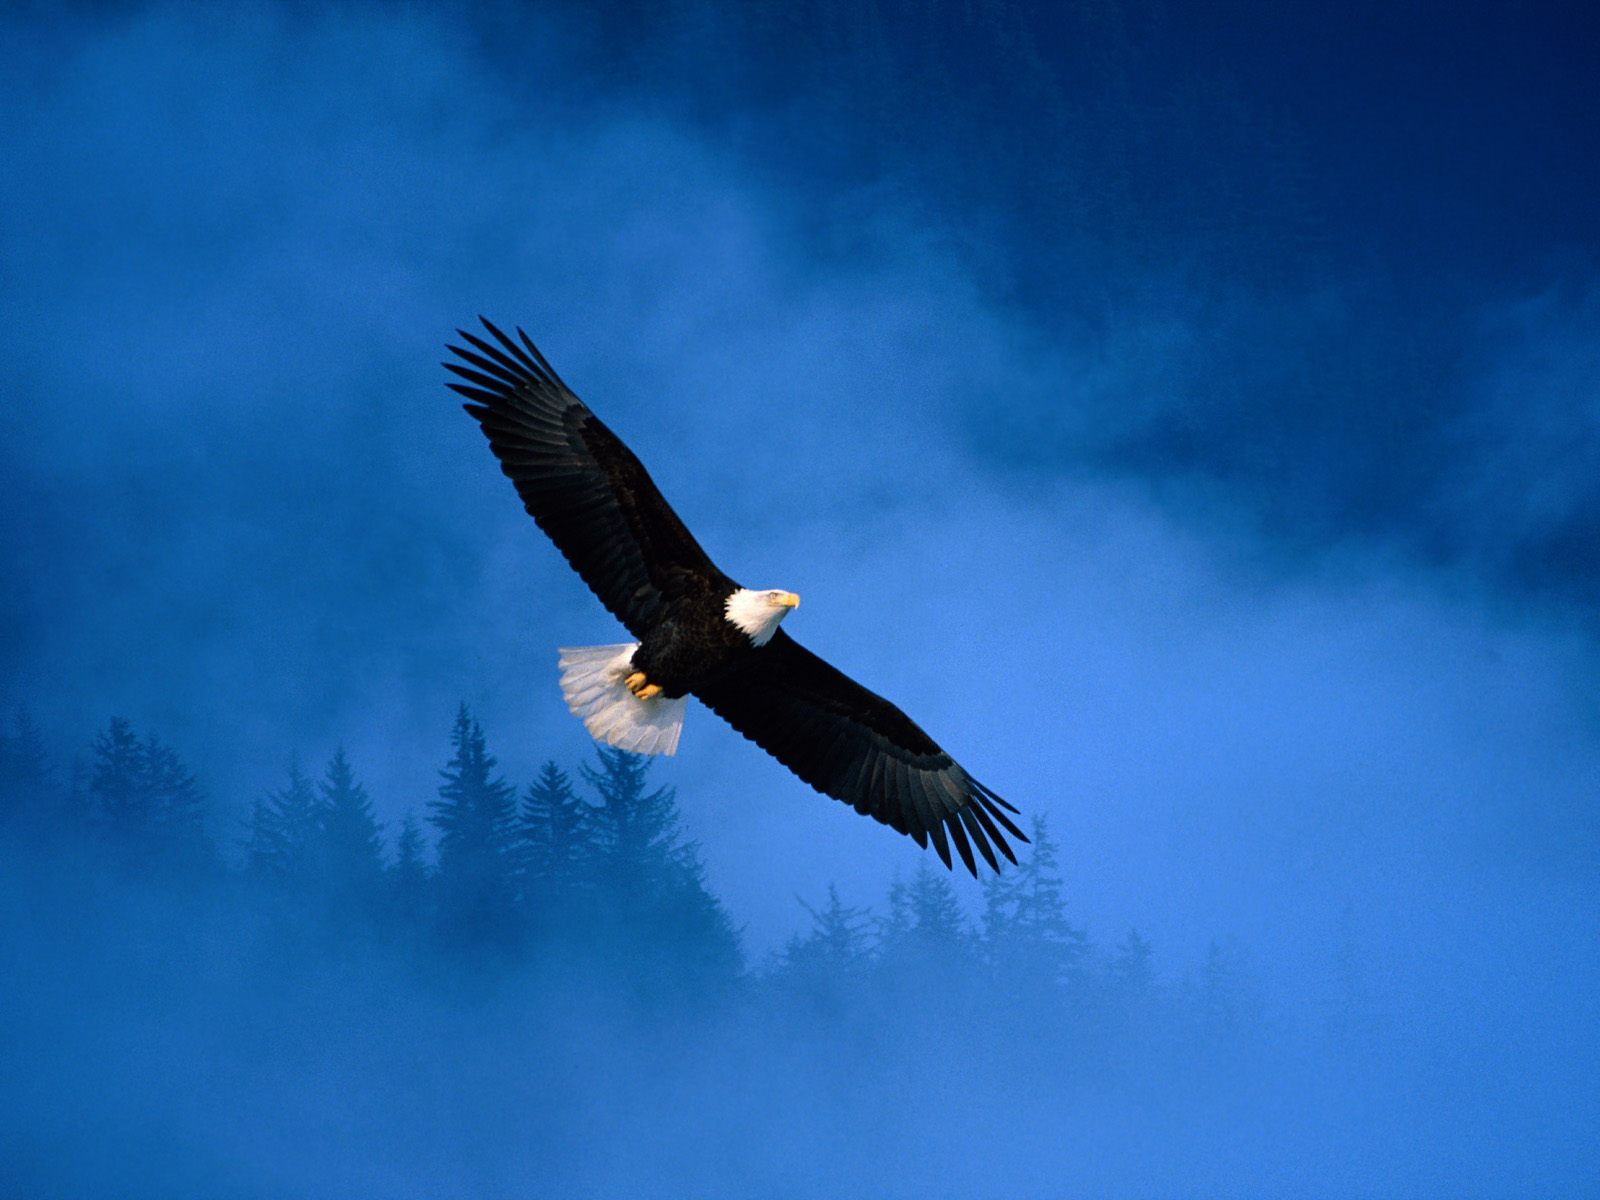 我是一只自由自在的鸟,经常在蓝蓝的天空中飞翔